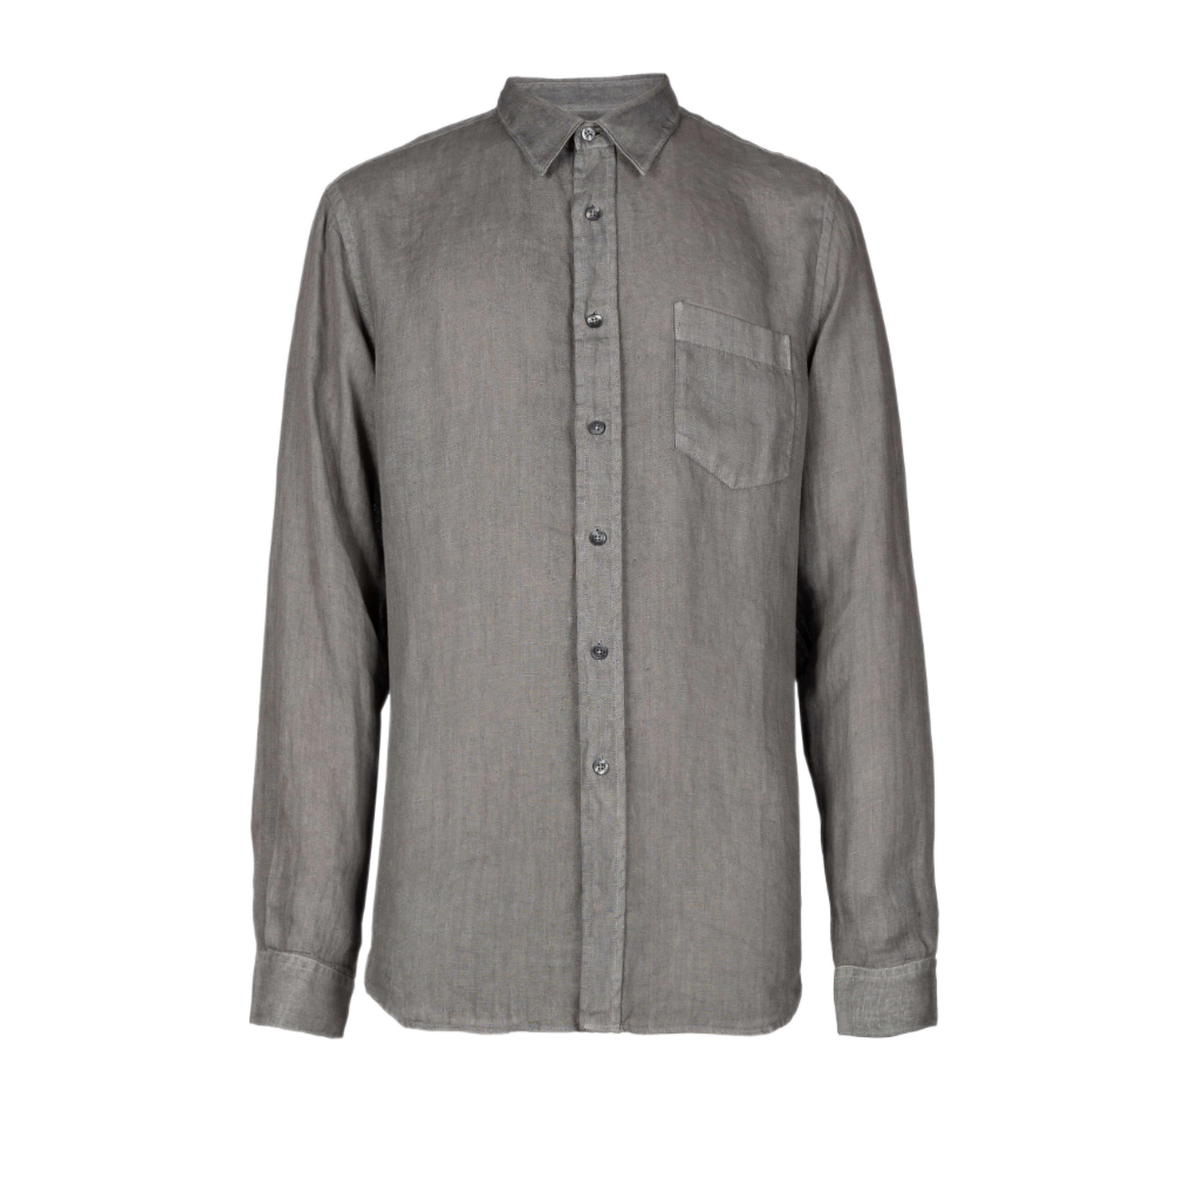 120% Lino Elephant Soft Fade Button Shirt